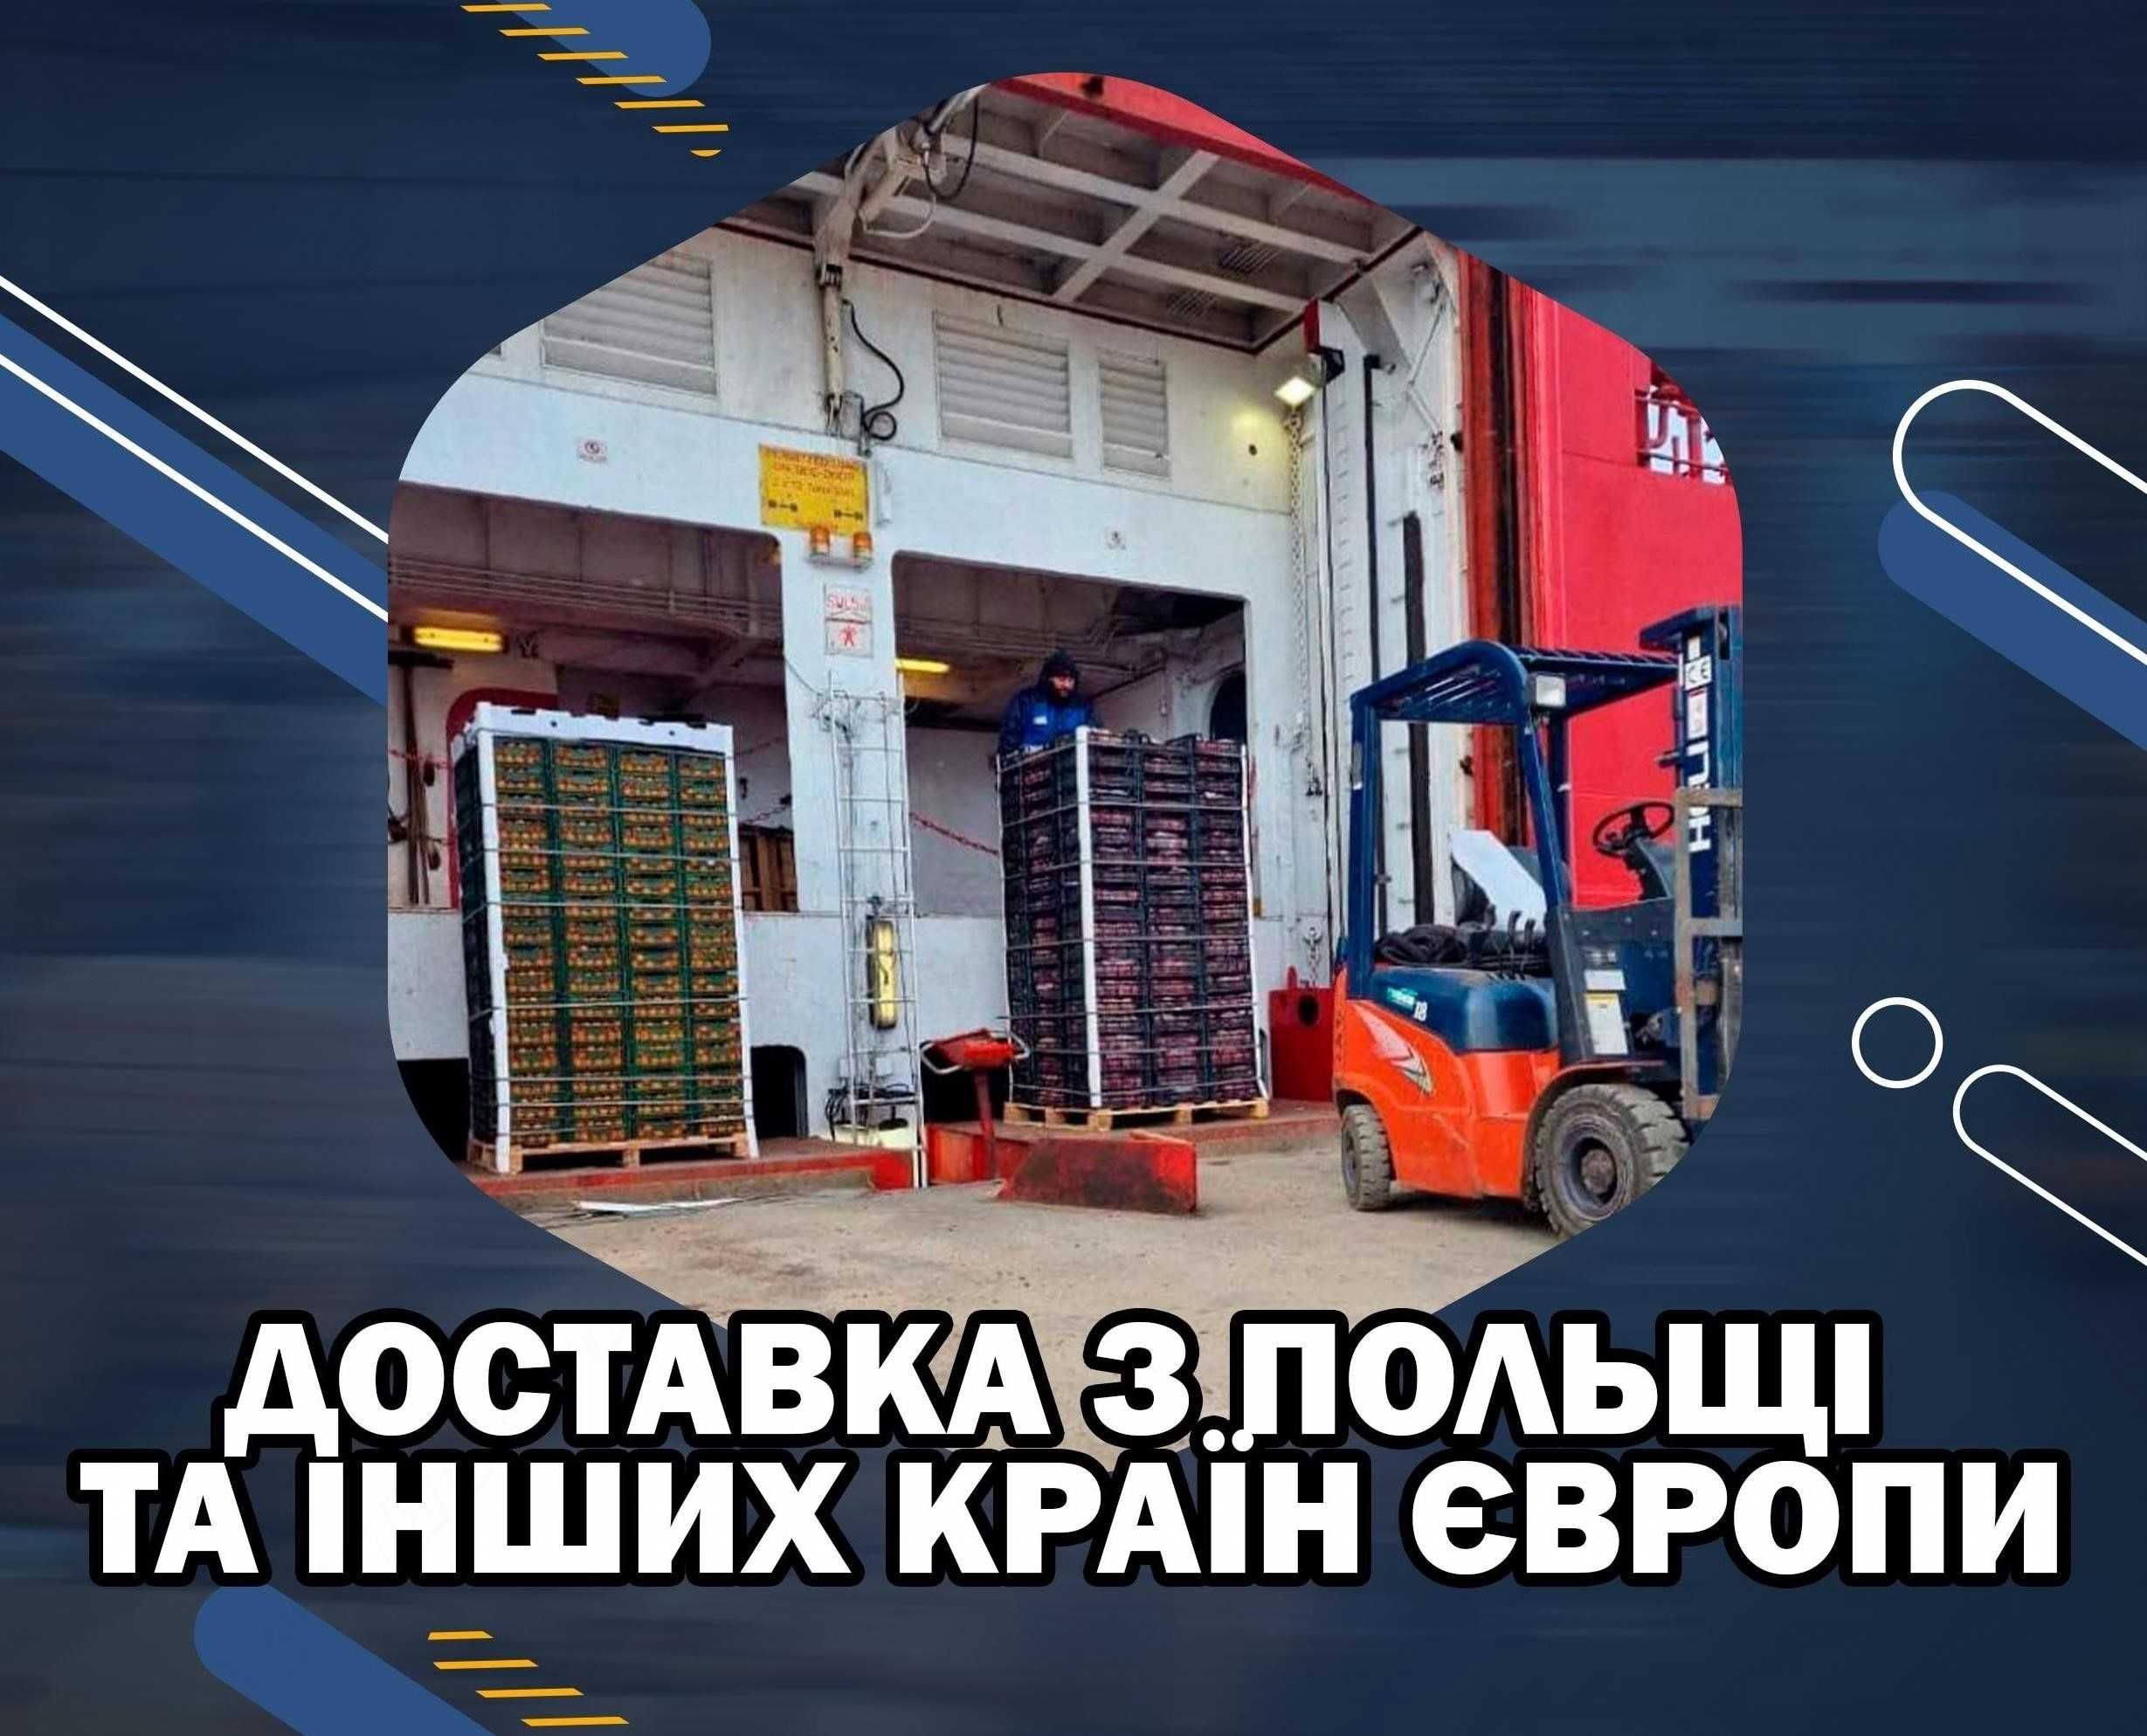 Доставка вантажів / товарів з Європи та Польщі Польши. 50% ВИГОДИ!